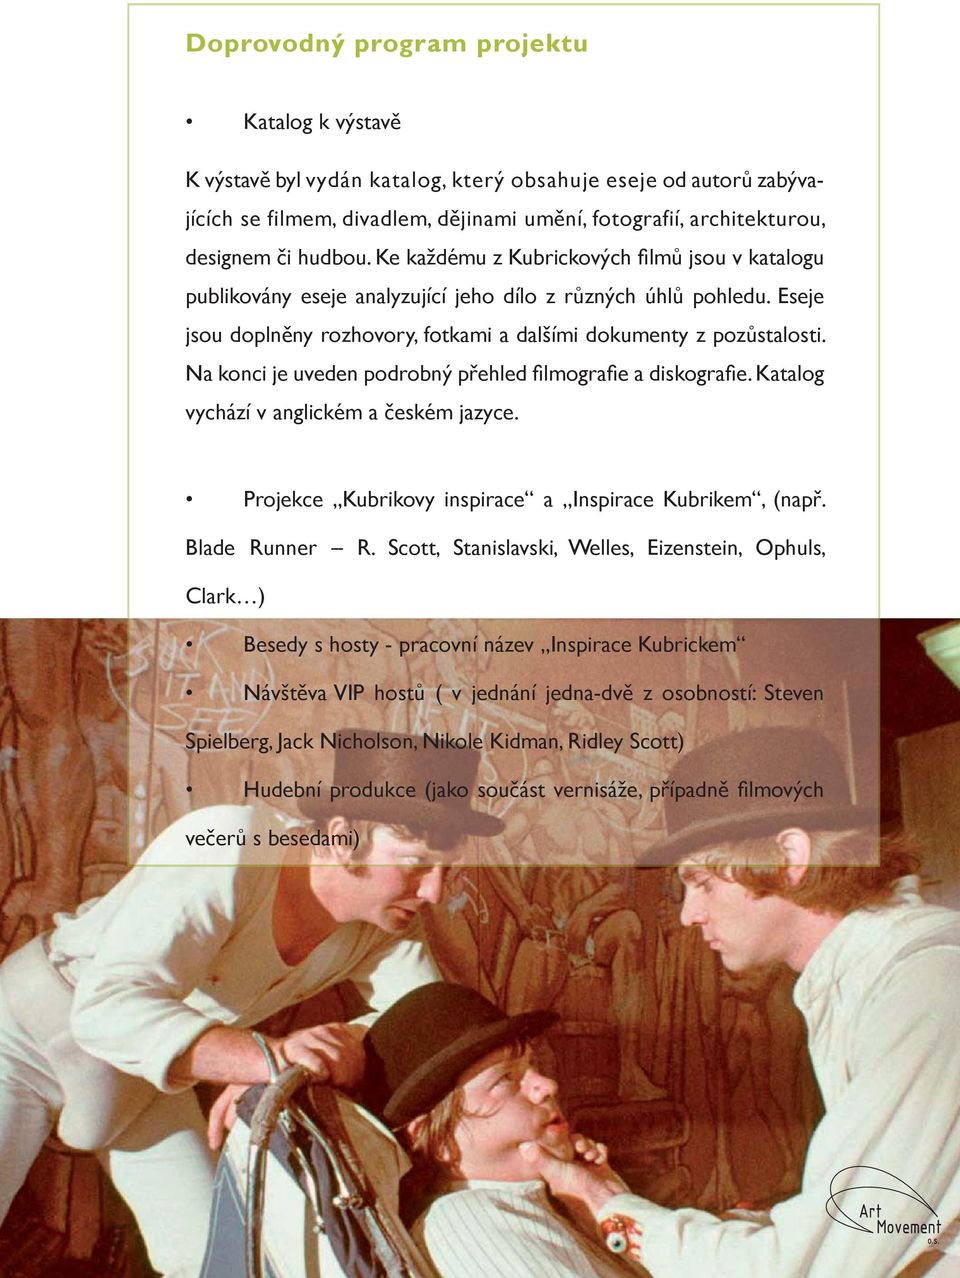 Na konci je uveden podrobný přehled fi lmografi e a diskografi e. Katalog vychází v anglickém a českém jazyce. Projekce Kubrikovy inspirace a Inspirace Kubrikem, (např. Blade Runner R.